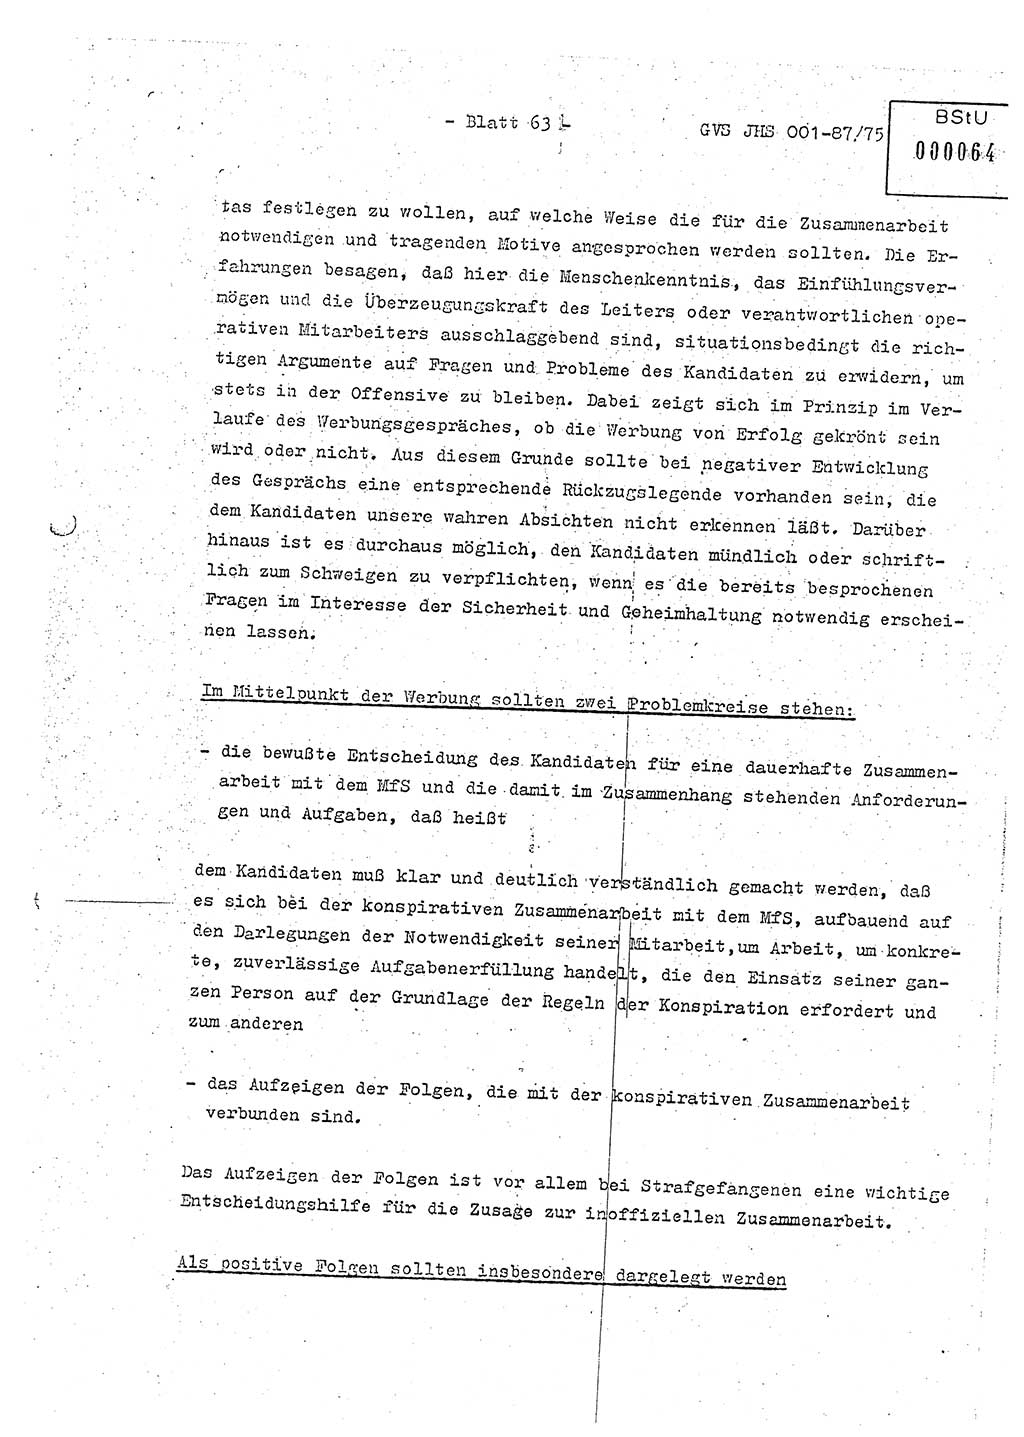 Diplomarbeit Hauptmann Volkmar Heinz (Abt. ⅩⅣ), Oberleutnant Lothar Rüdiger (BV Lpz. Abt. Ⅺ), Ministerium für Staatssicherheit (MfS) [Deutsche Demokratische Republik (DDR)], Juristische Hochschule (JHS), Geheime Verschlußsache (GVS) o001-87/75, Potsdam 1975, Seite 63 (Dipl.-Arb. MfS DDR JHS GVS o001-87/75 1975, S. 63)